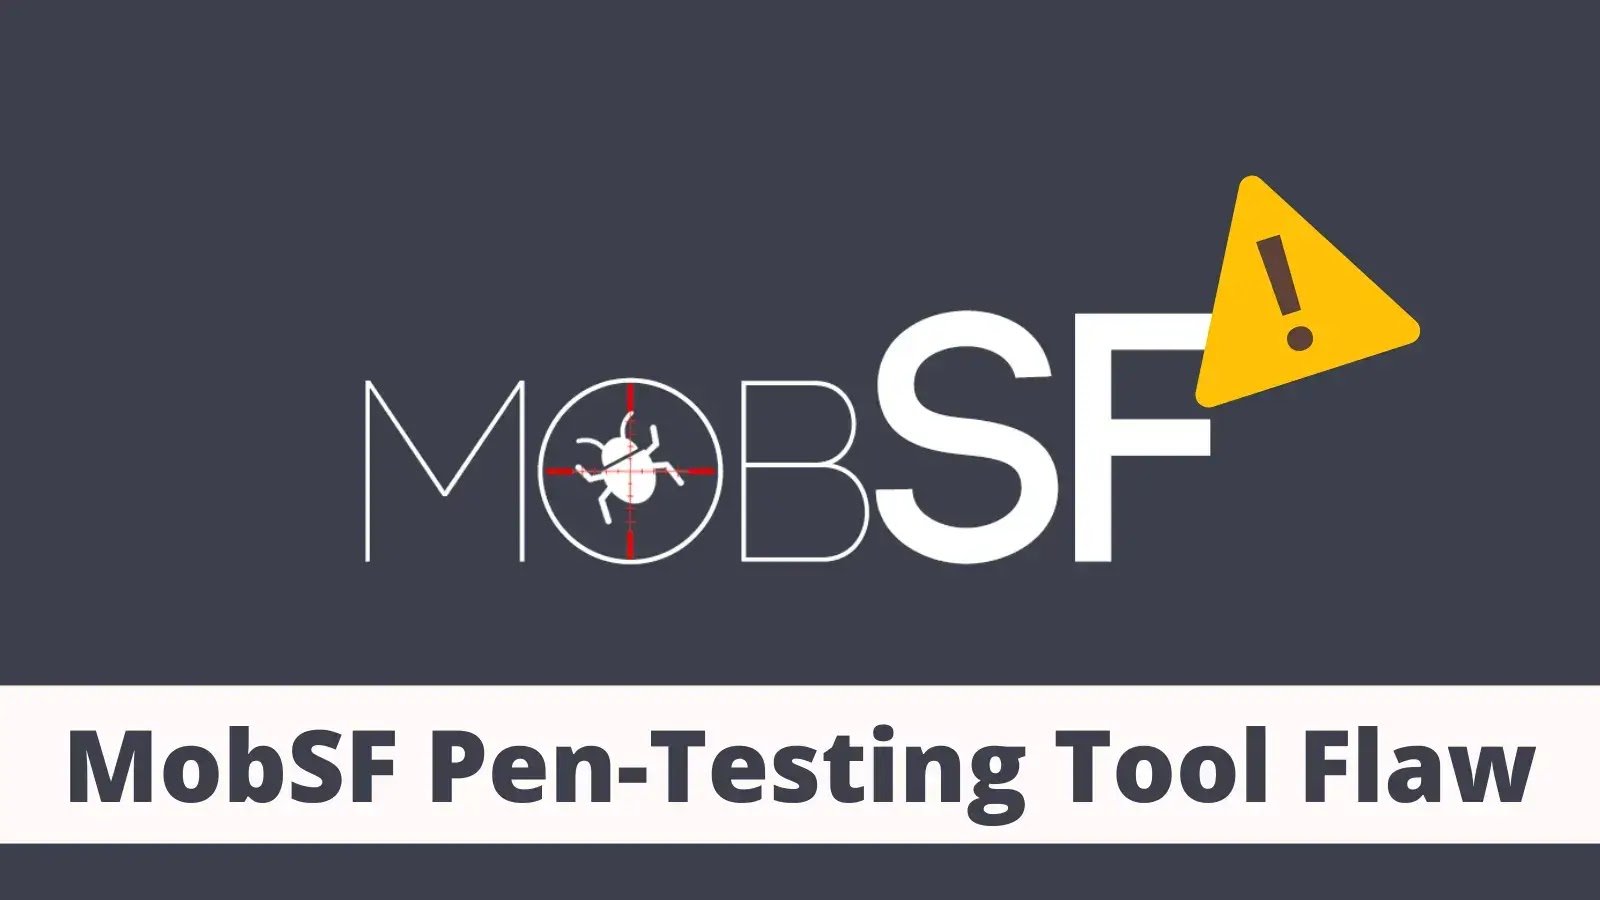 MobSF Pen-testing